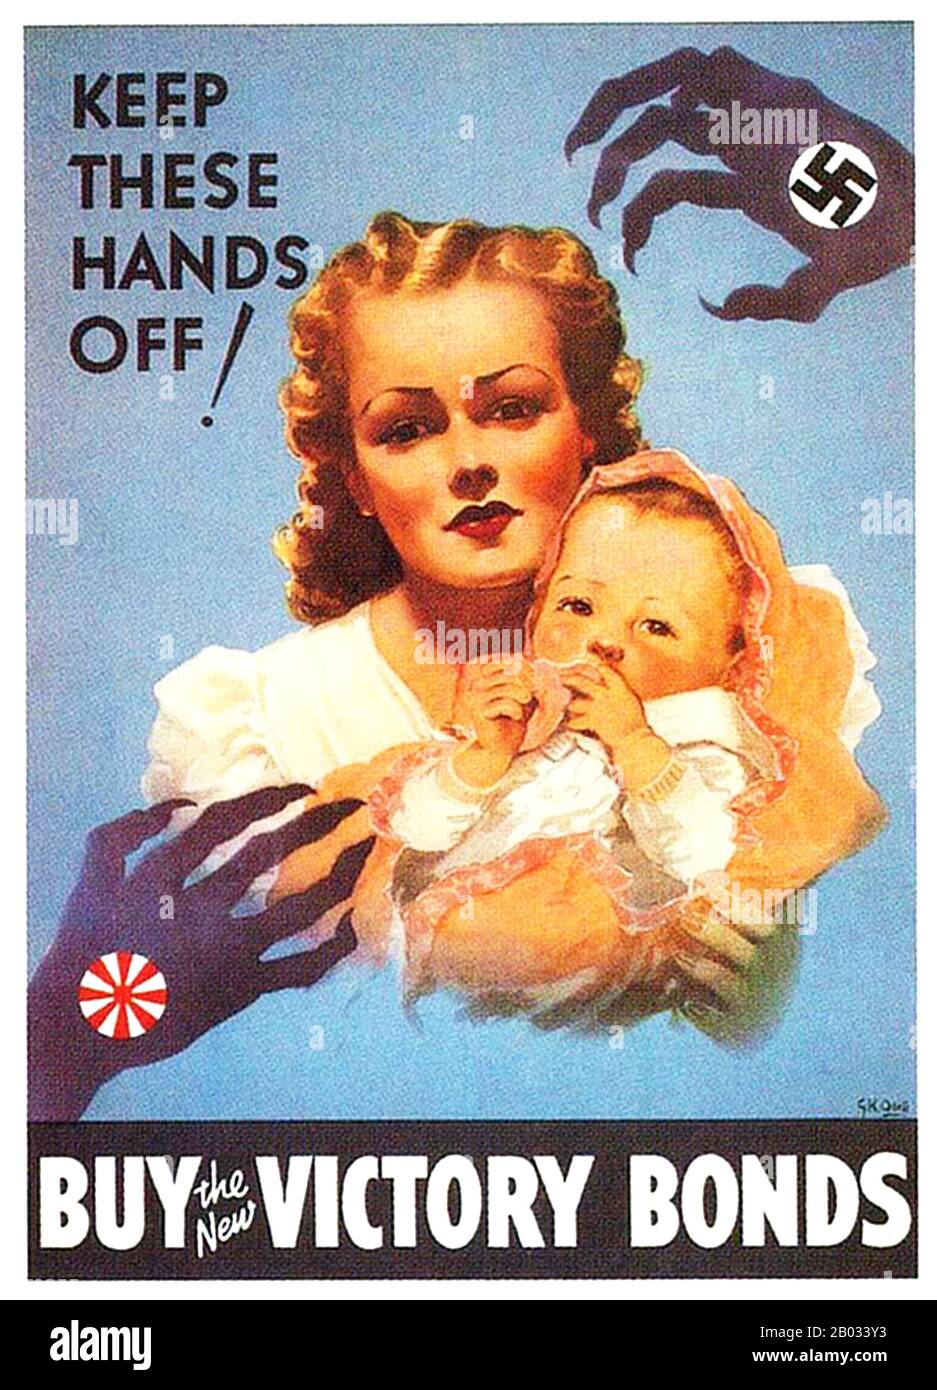 Die Hände, die mit dem Nazi Swastika Symbol und der Kaiserlich japanischen Aufgehenden Sonne versehen sind, bedrohten eine Amerikanerin und ein Kind. Stockfoto